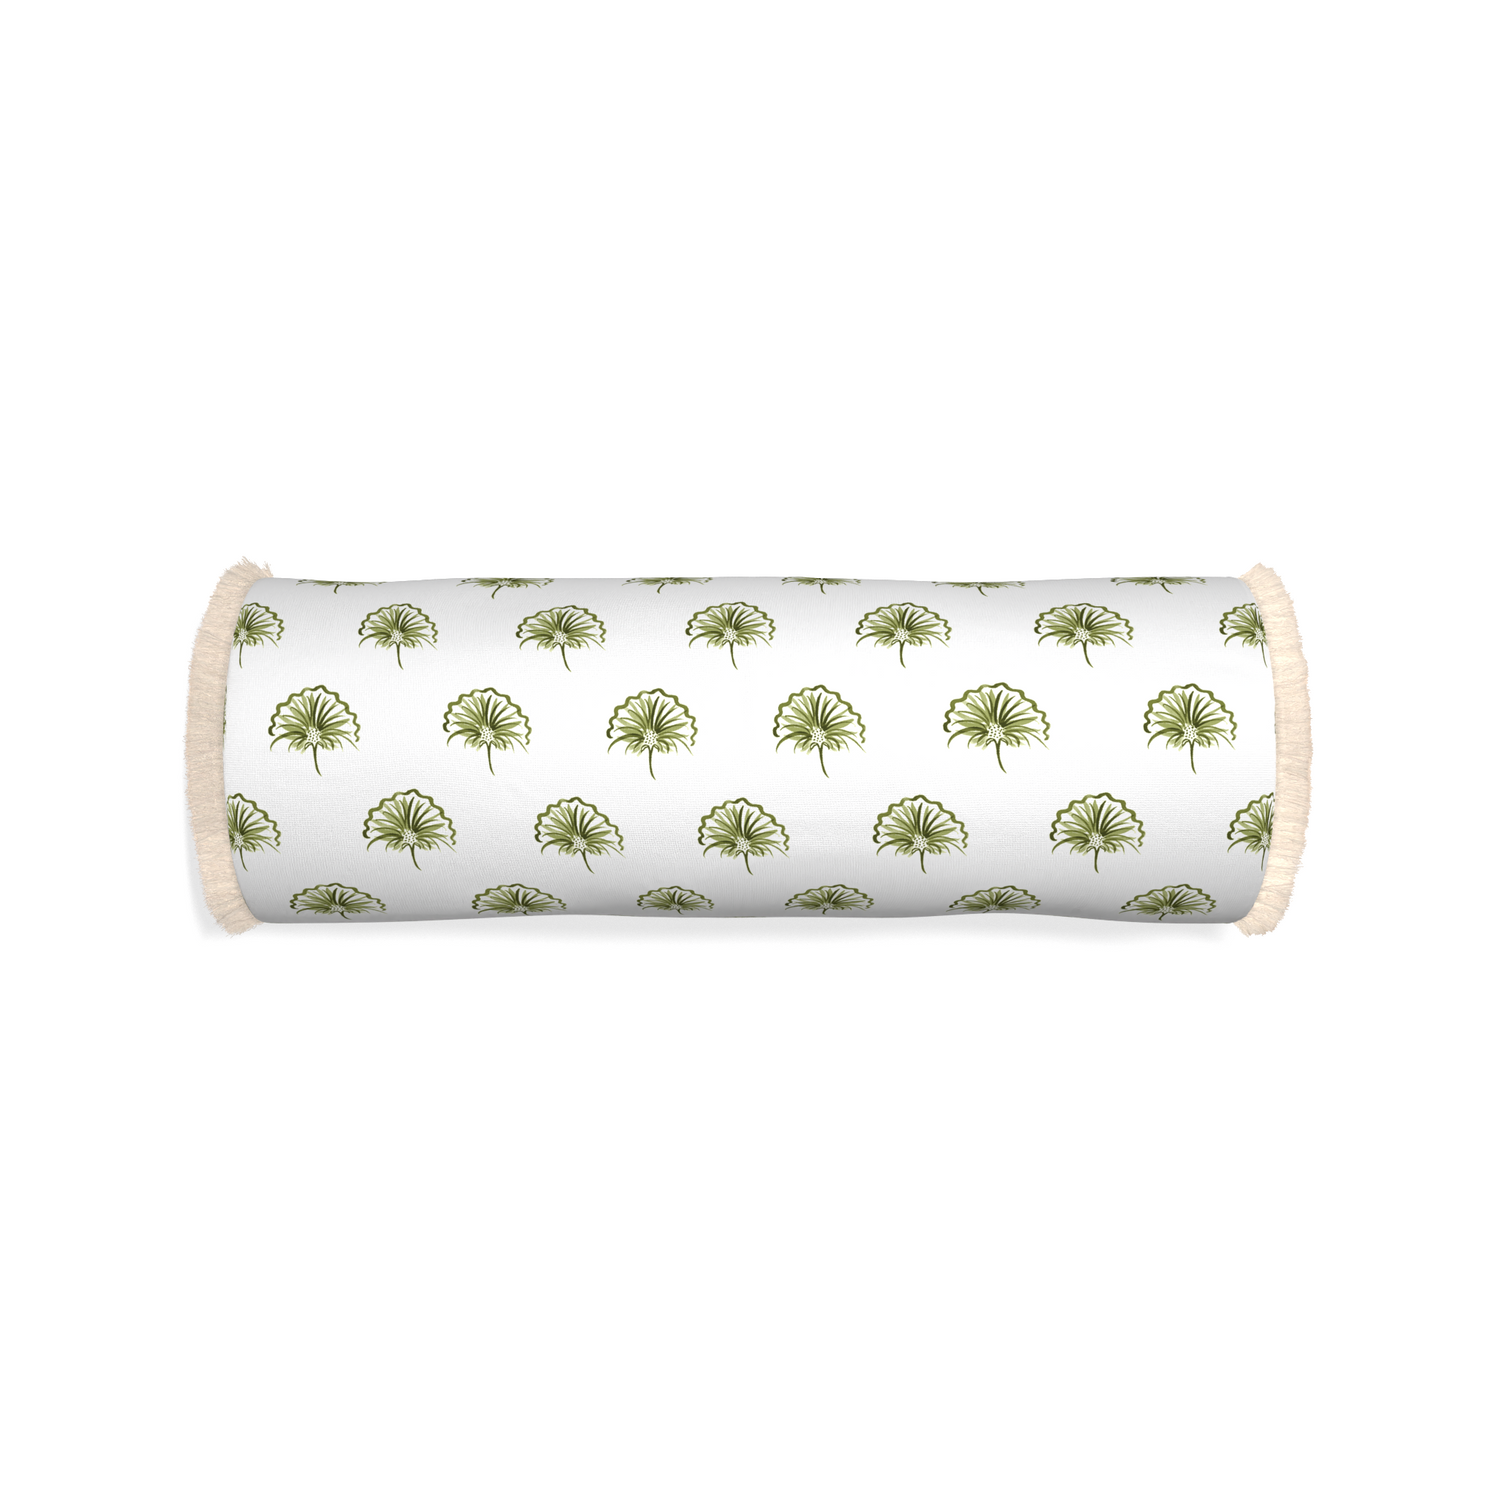 Bolster penelope moss custom green floralpillow with cream fringe on white background